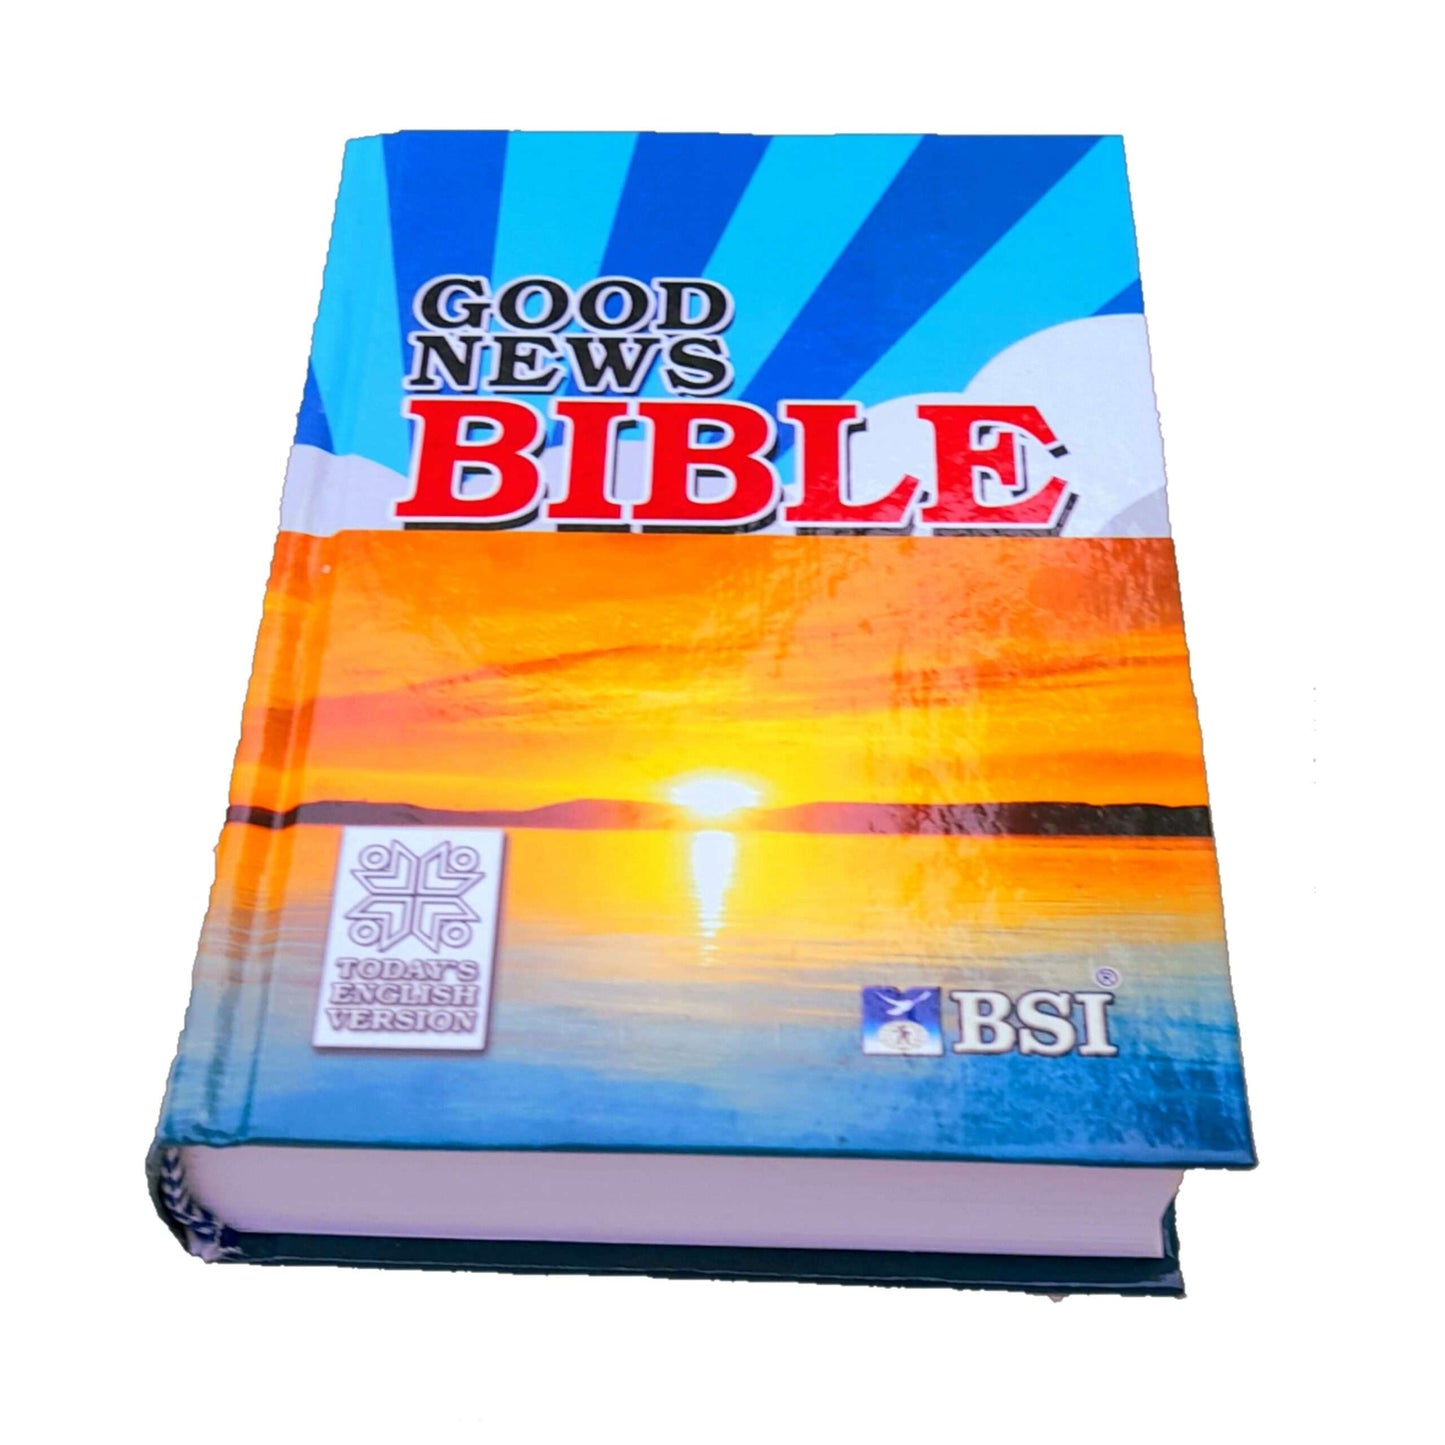 The Holy Small Good News English Bible